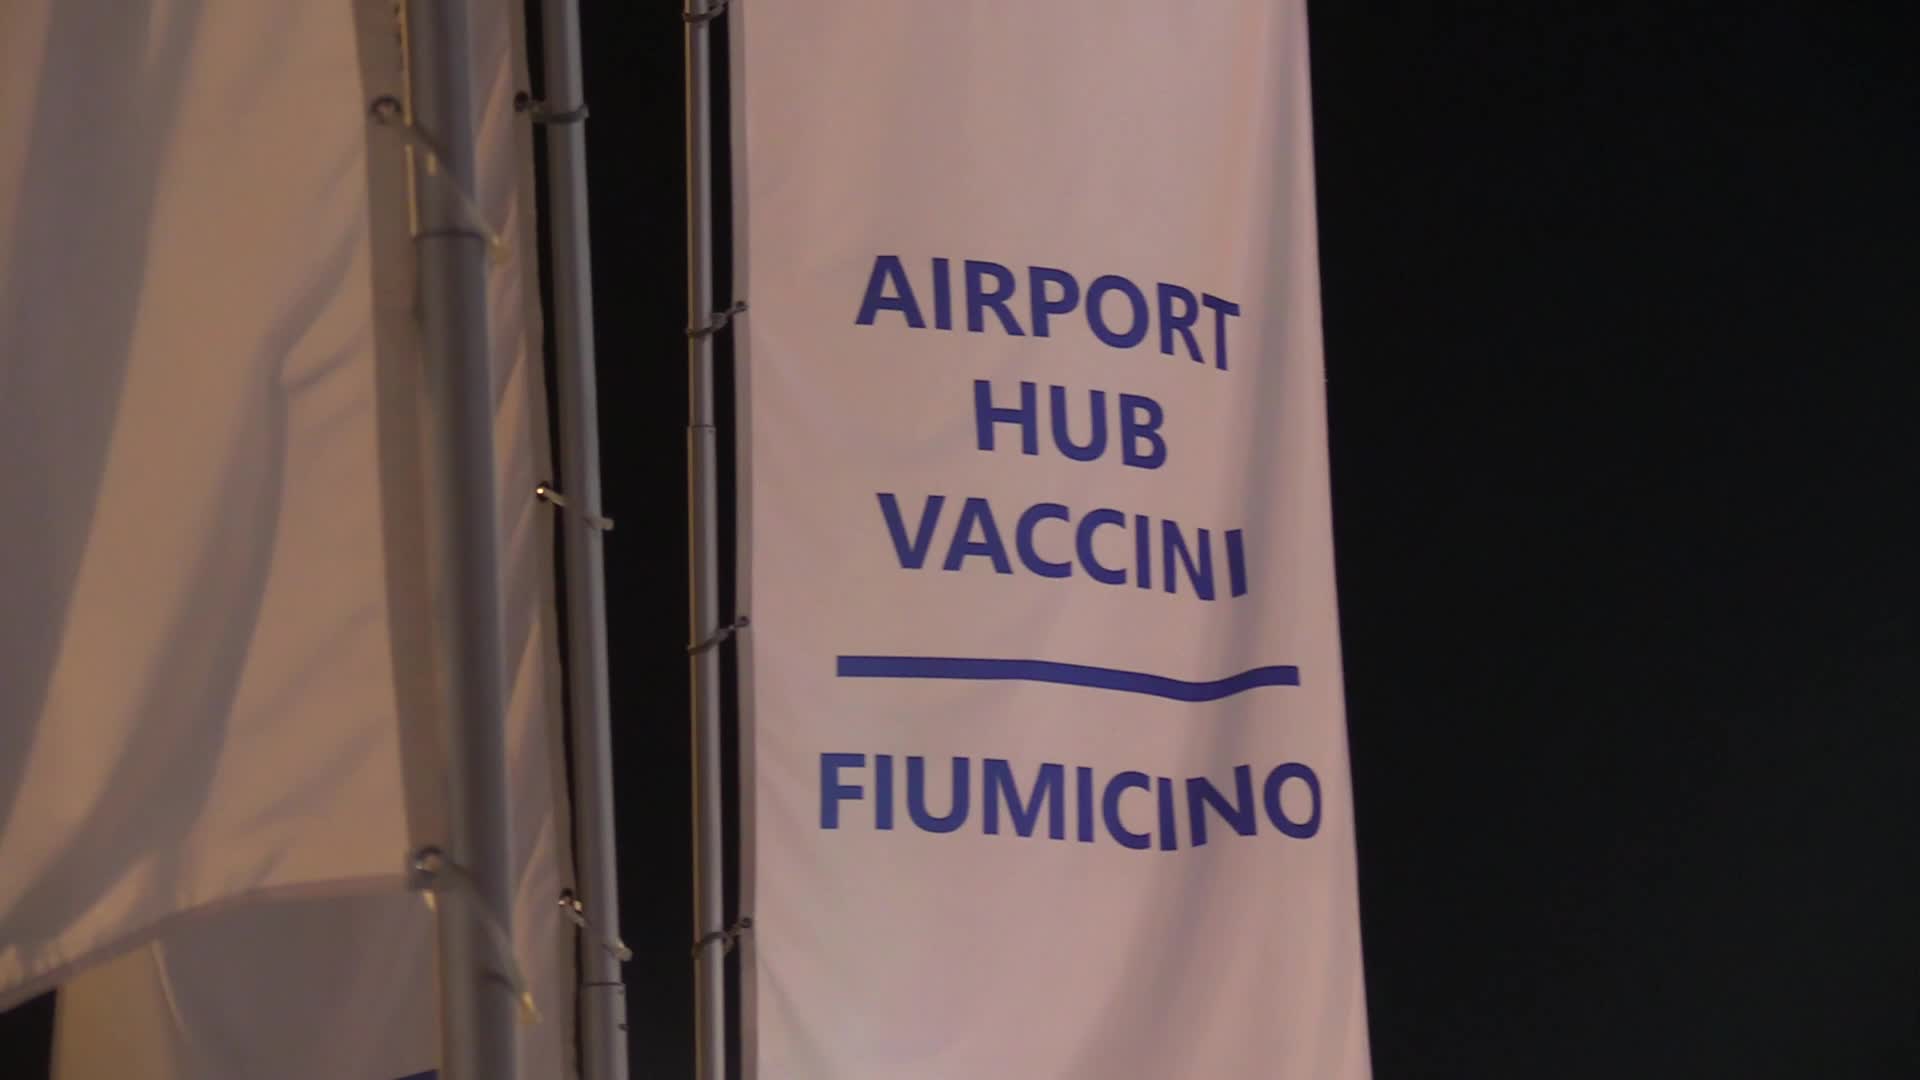 Vaccini, hub Fiumicino aperto anche di sera fino alle 24